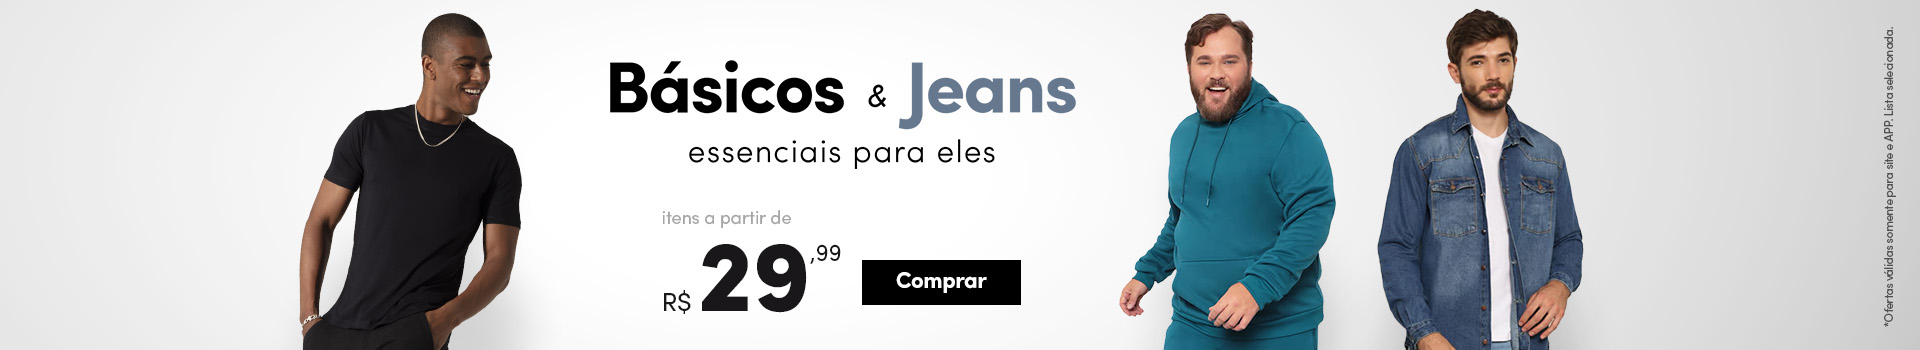 Básicos e jeans a partir de R$ 29,99